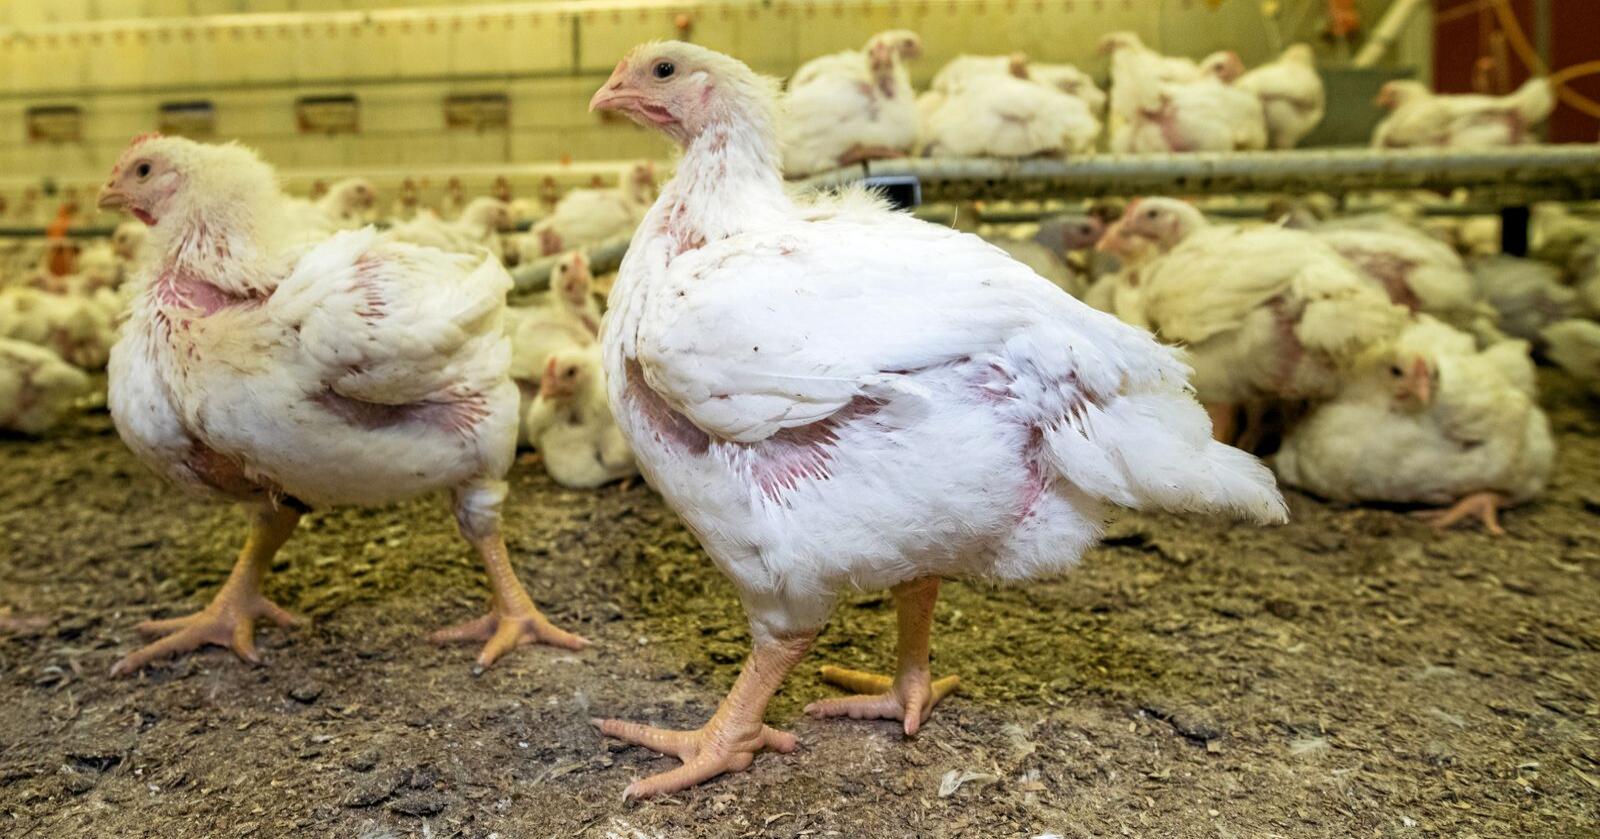 Nærmere 70 prosent av bøndene mener at dyrevernsorganisasjoner kommer til å gi misvisende informasjon om en tenkt dyrevelferdsskandale innen kyllingproduksjon, viser en undersøkelse fra Ruralis. Foto: Vidar Sandnes